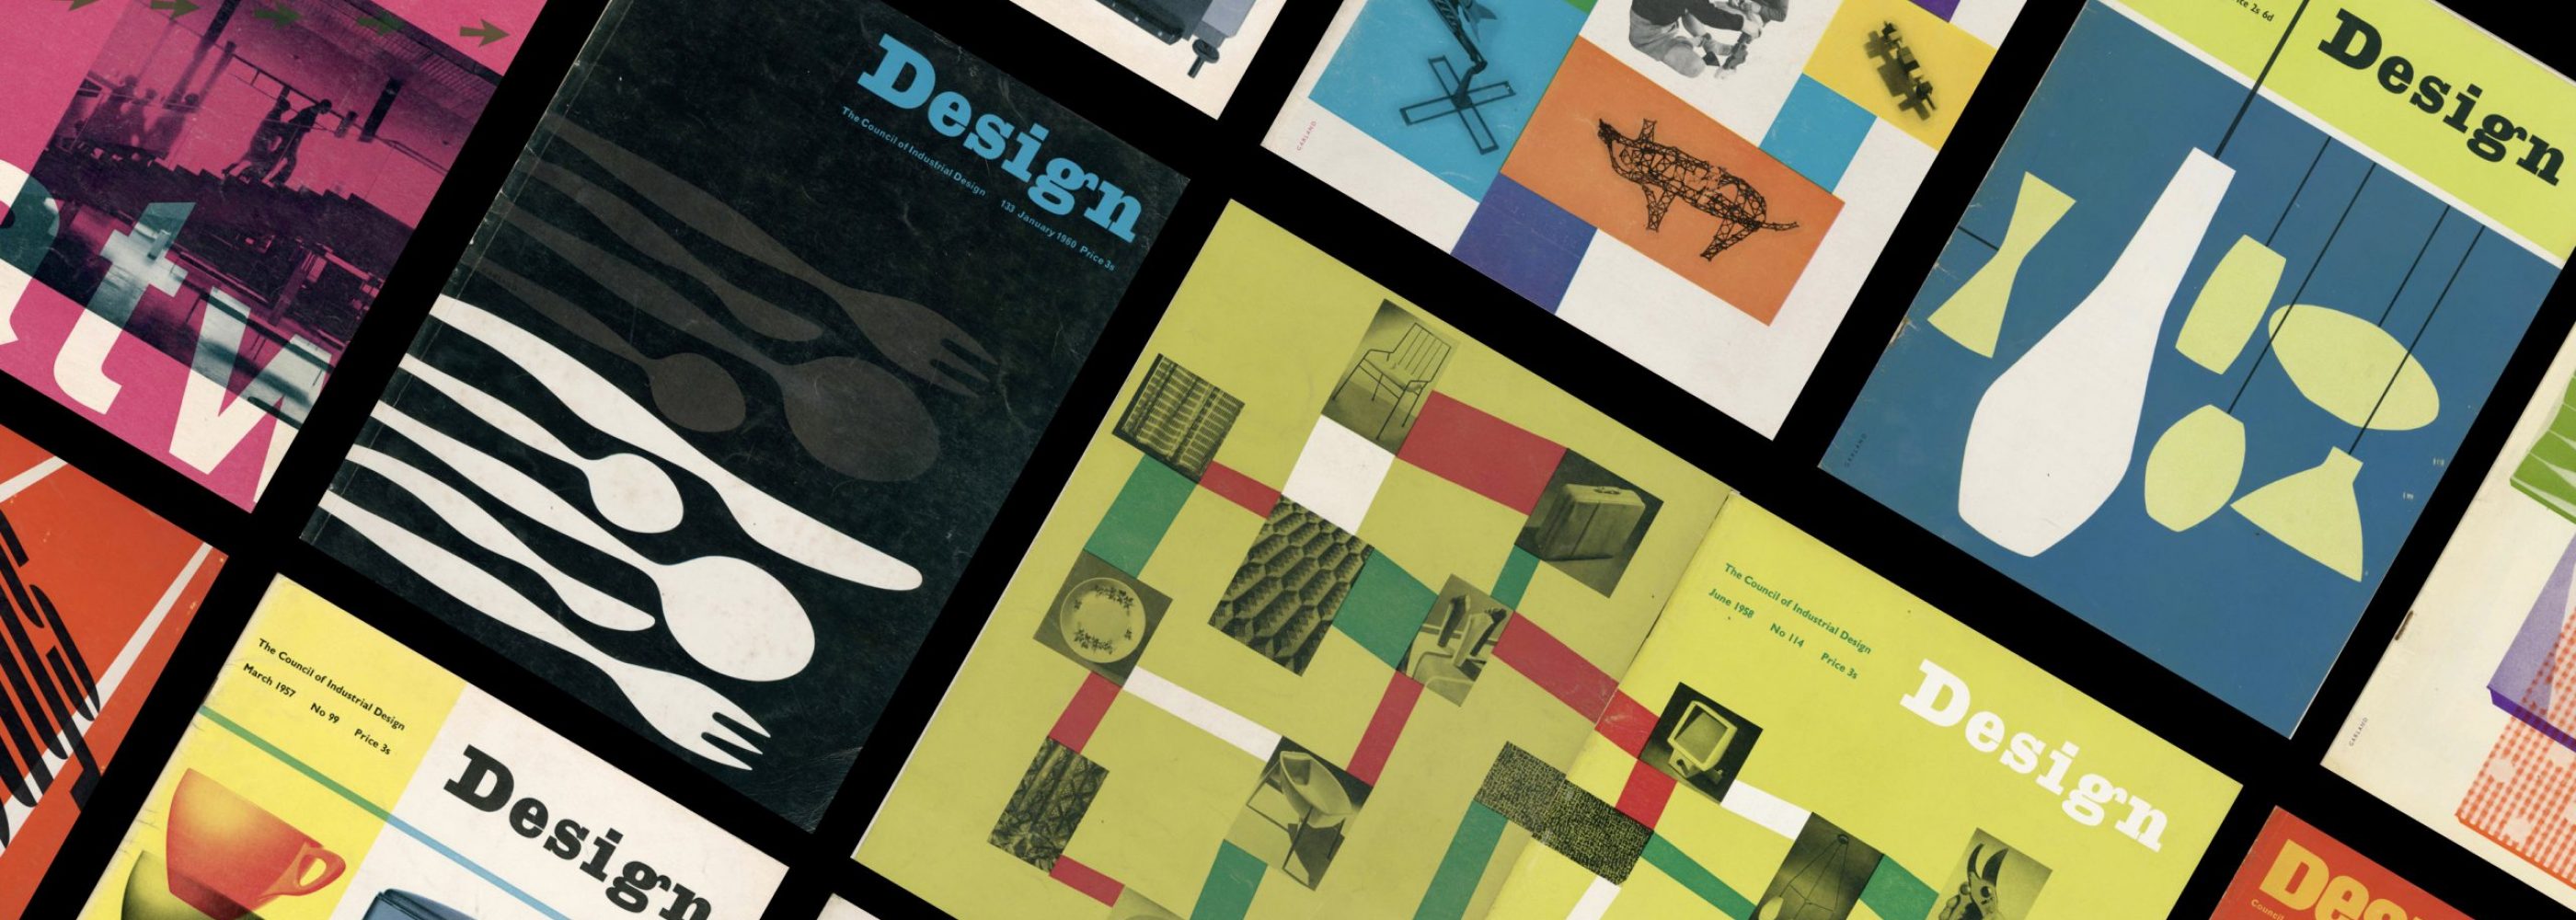 Ken Garland Design Magazines